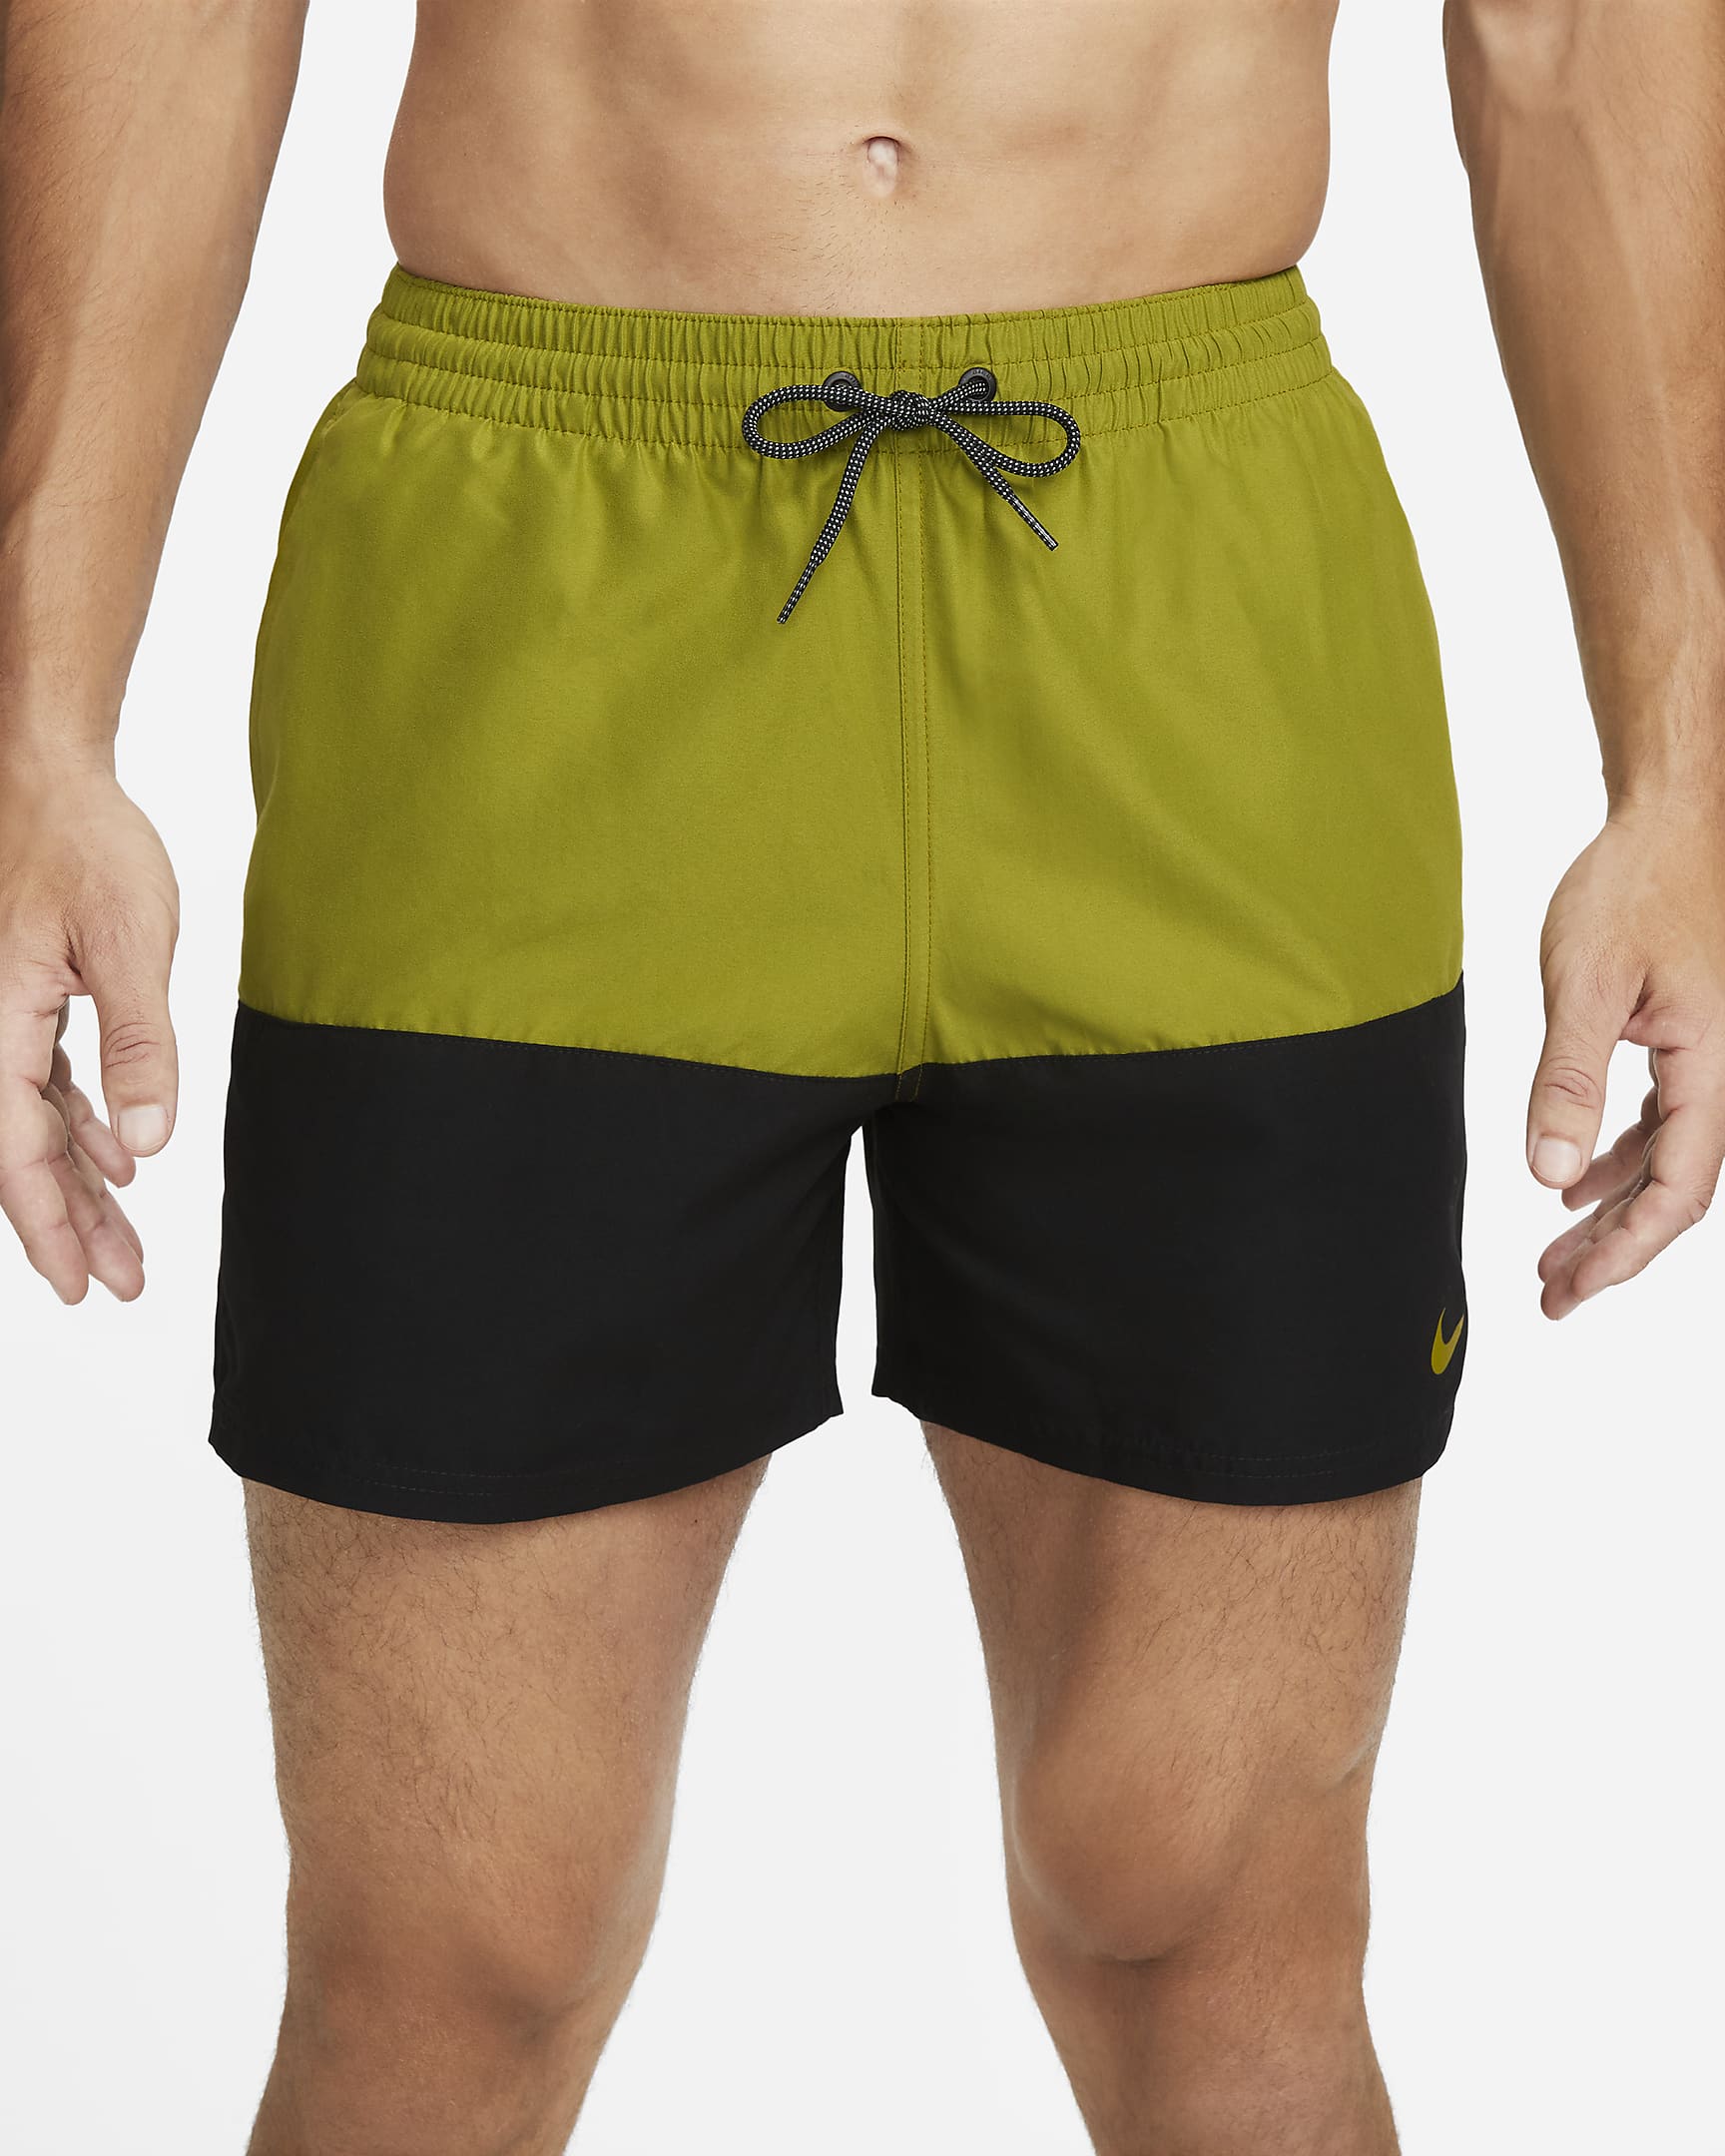 Nike Split-badebukser (13 cm) til mænd - Moss/sort/Moss